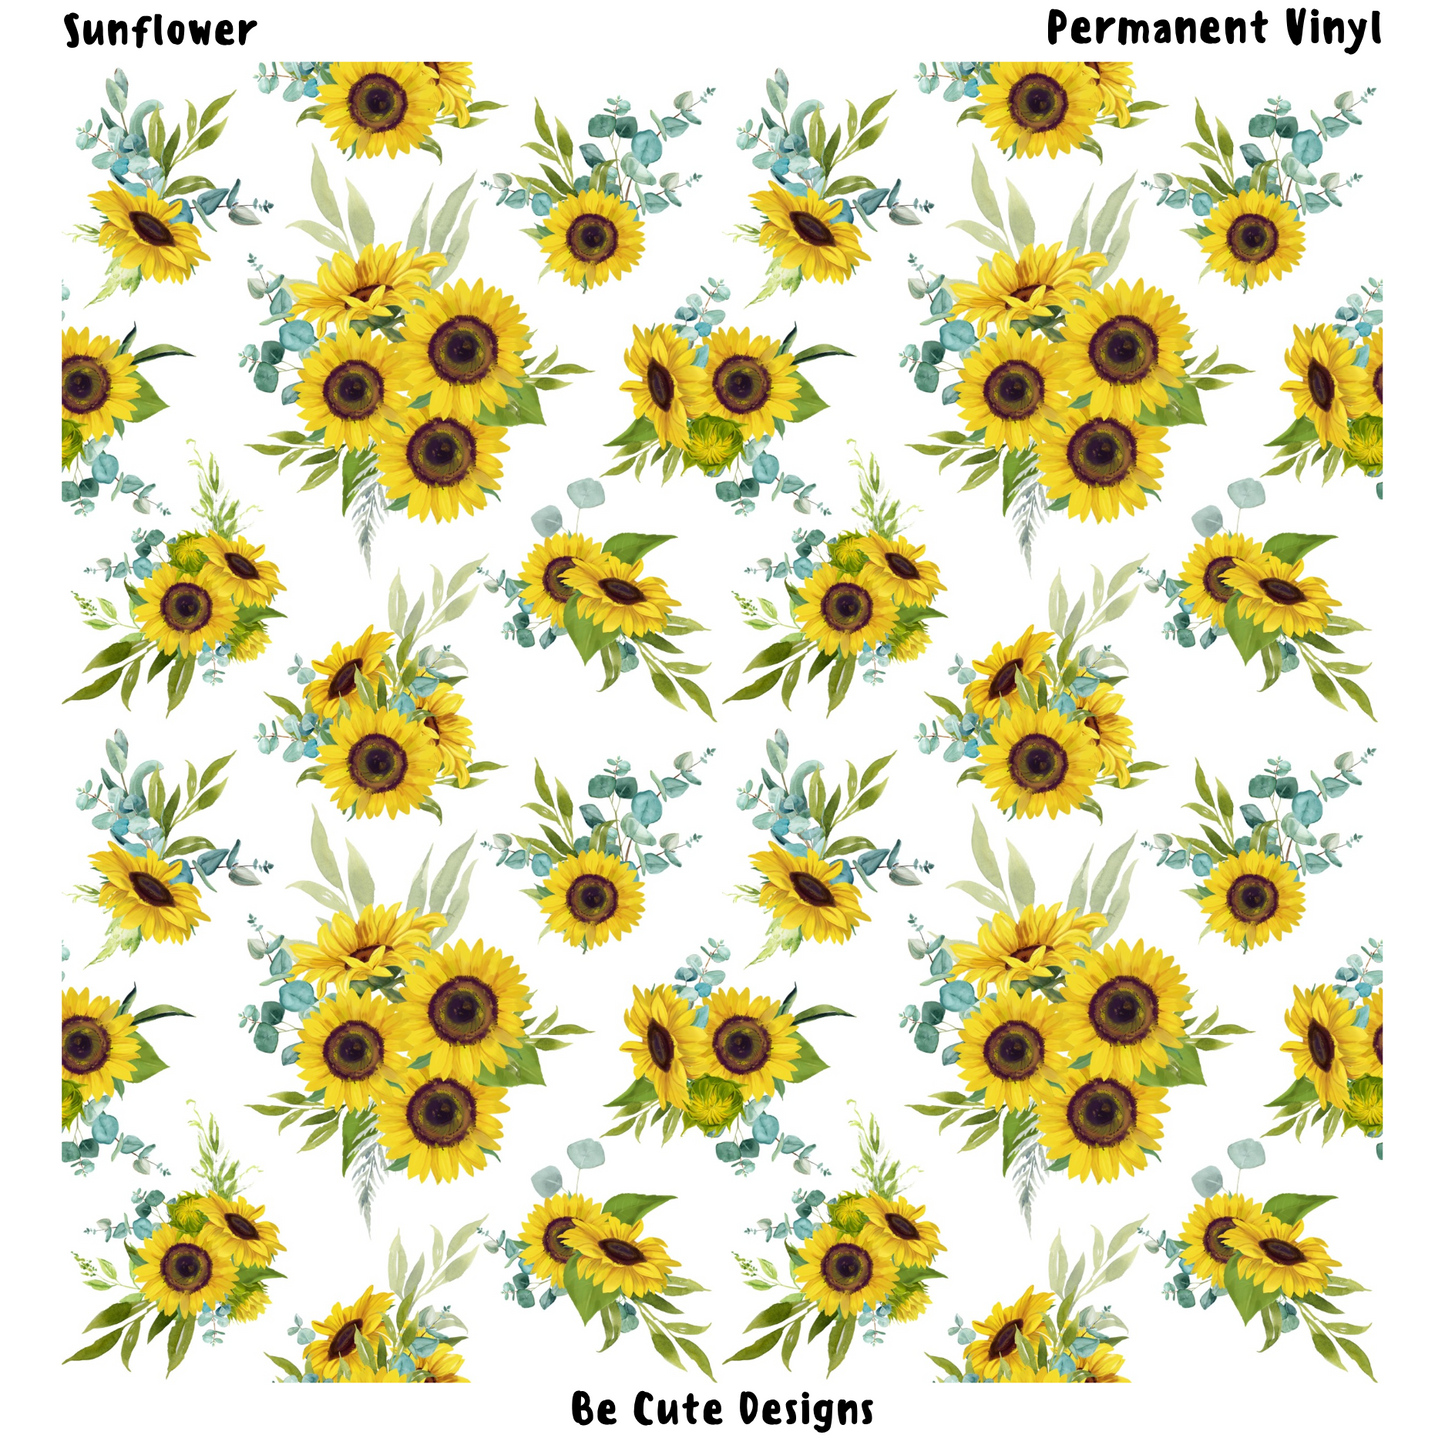 Sunflower Patterned Vinyl